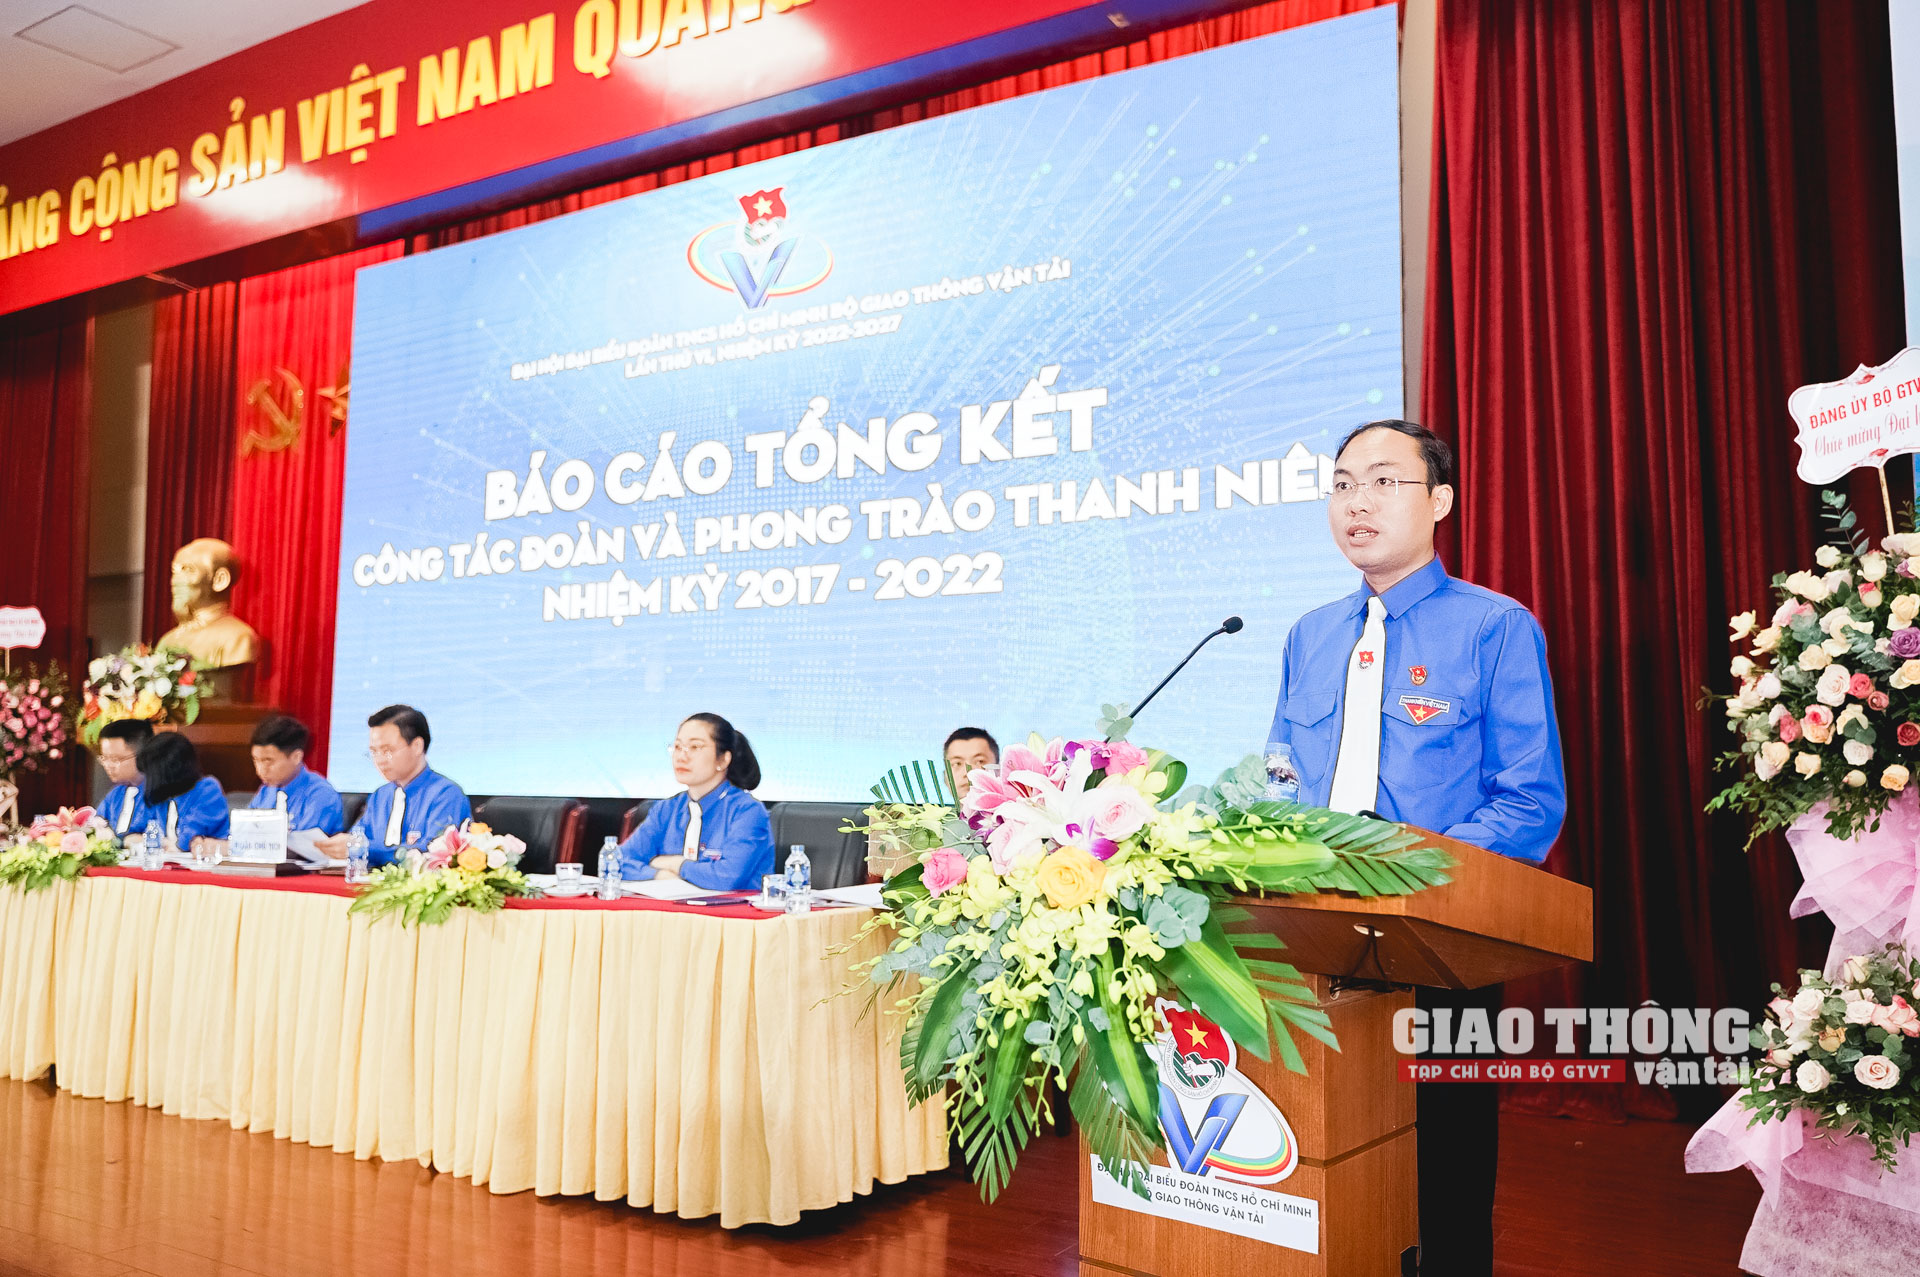 Đồng chí Nguyễn Giao Linh báo cáo tổng kết công tác đoàn và phong trào thanh niên nhiệm kỳ 2017 - 2022